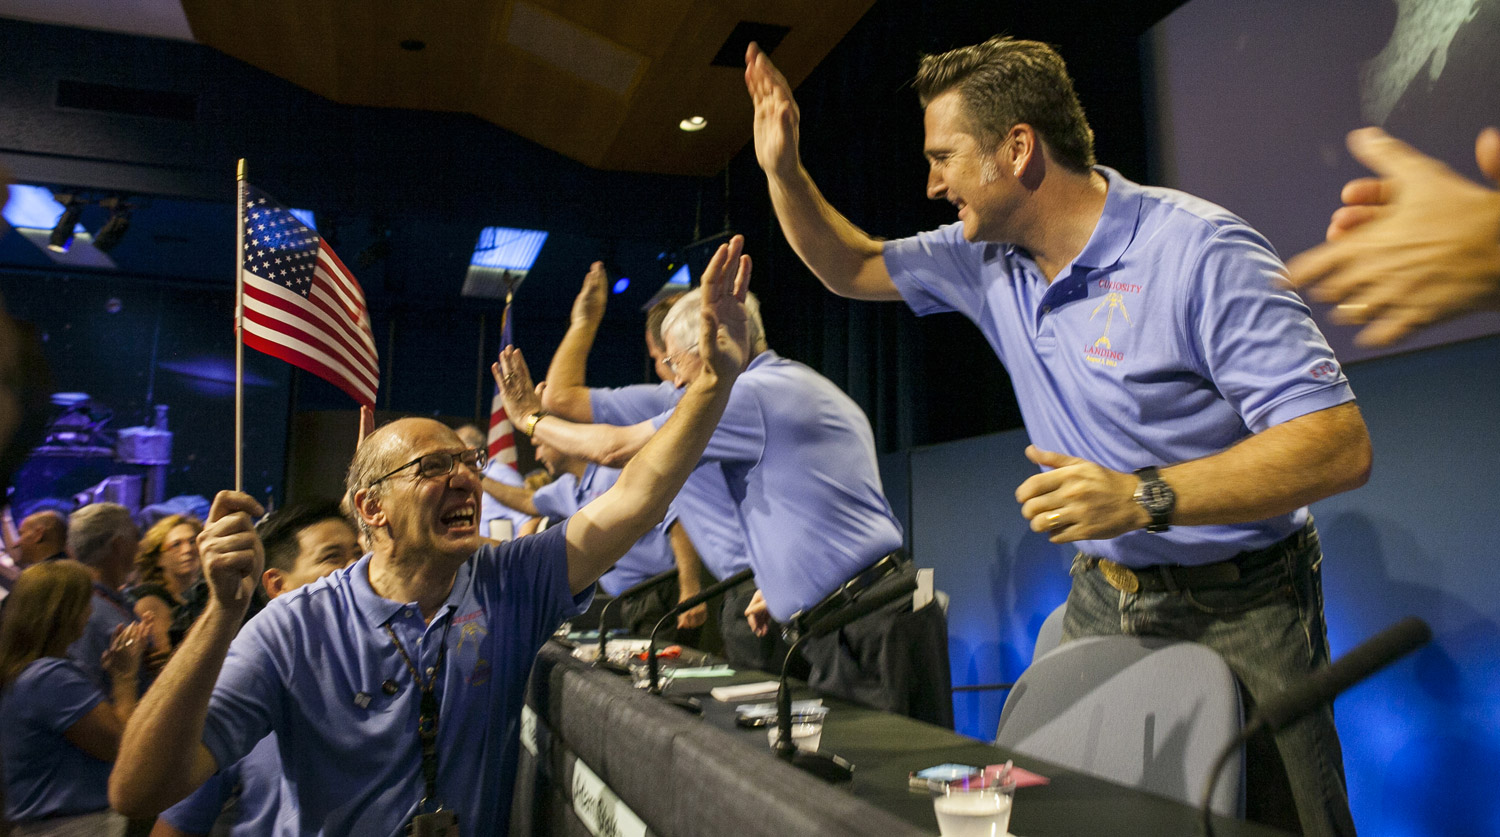 6 августа 2012 года. Сотрудники NASA радуются успешной посадке Curiosity на поверхность Марса